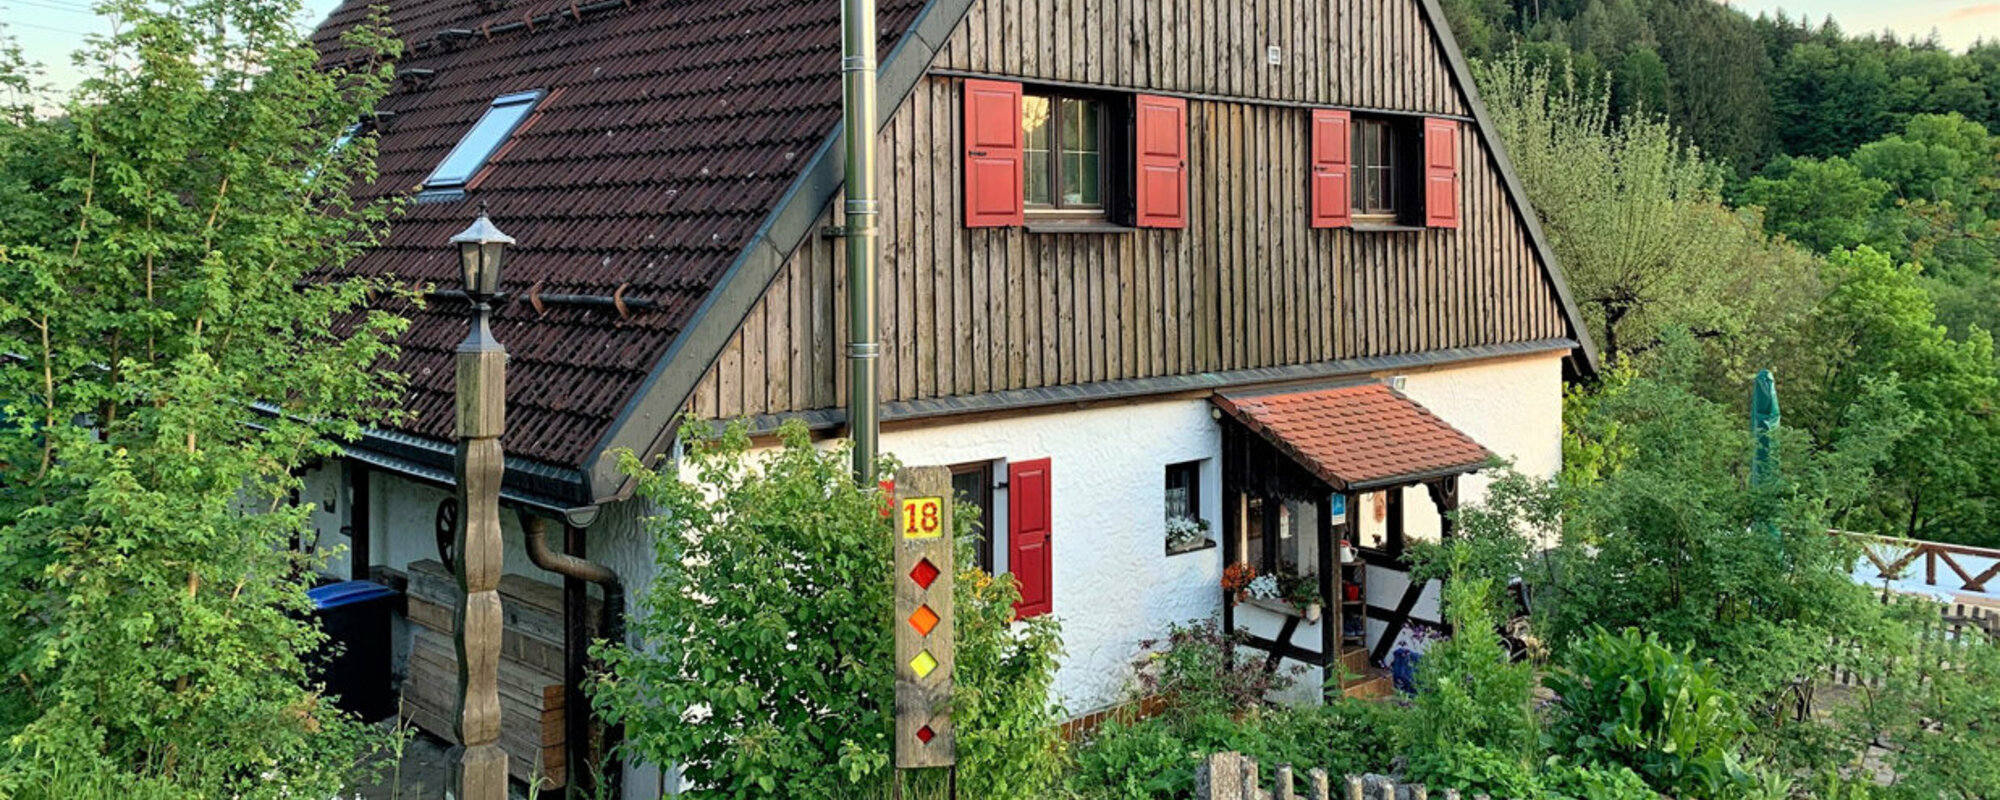 Ein Haus im Grünen mit hölzerner Fassade im oberen Bereich und roten Fensterläden.